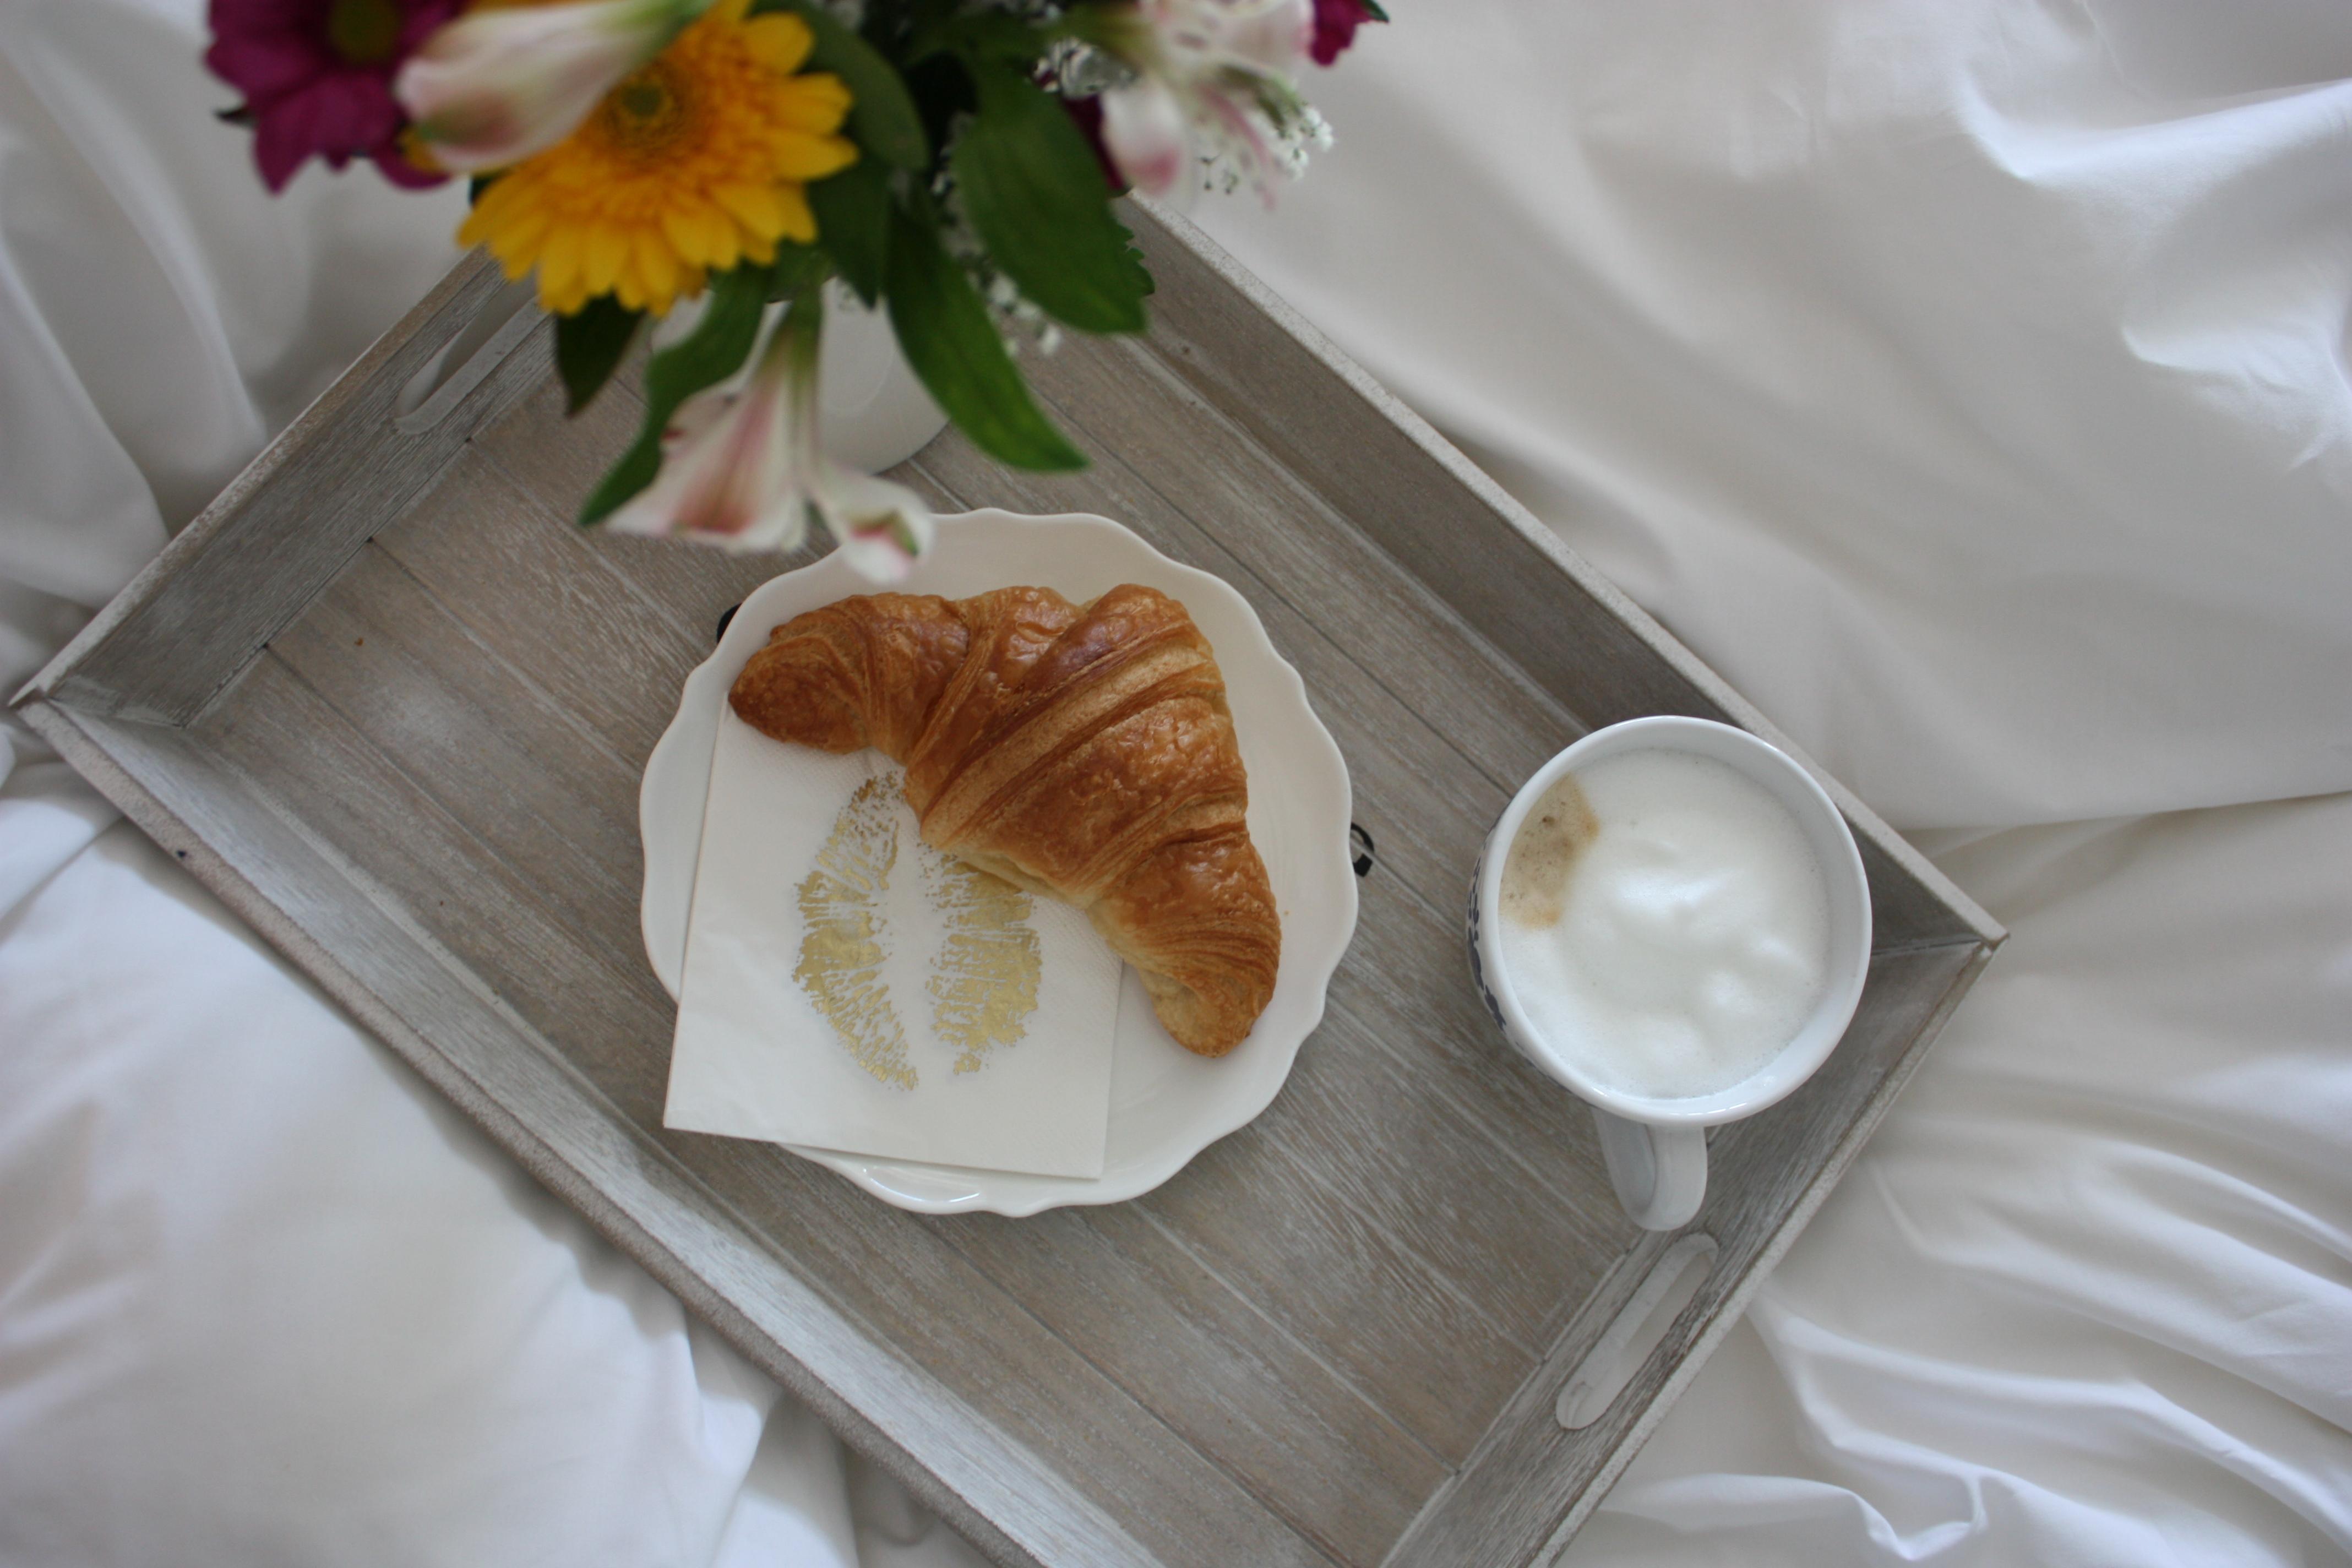 Frühstück im Bett #bett #boxspringbett ©Schlaraffia / Blütenzauber